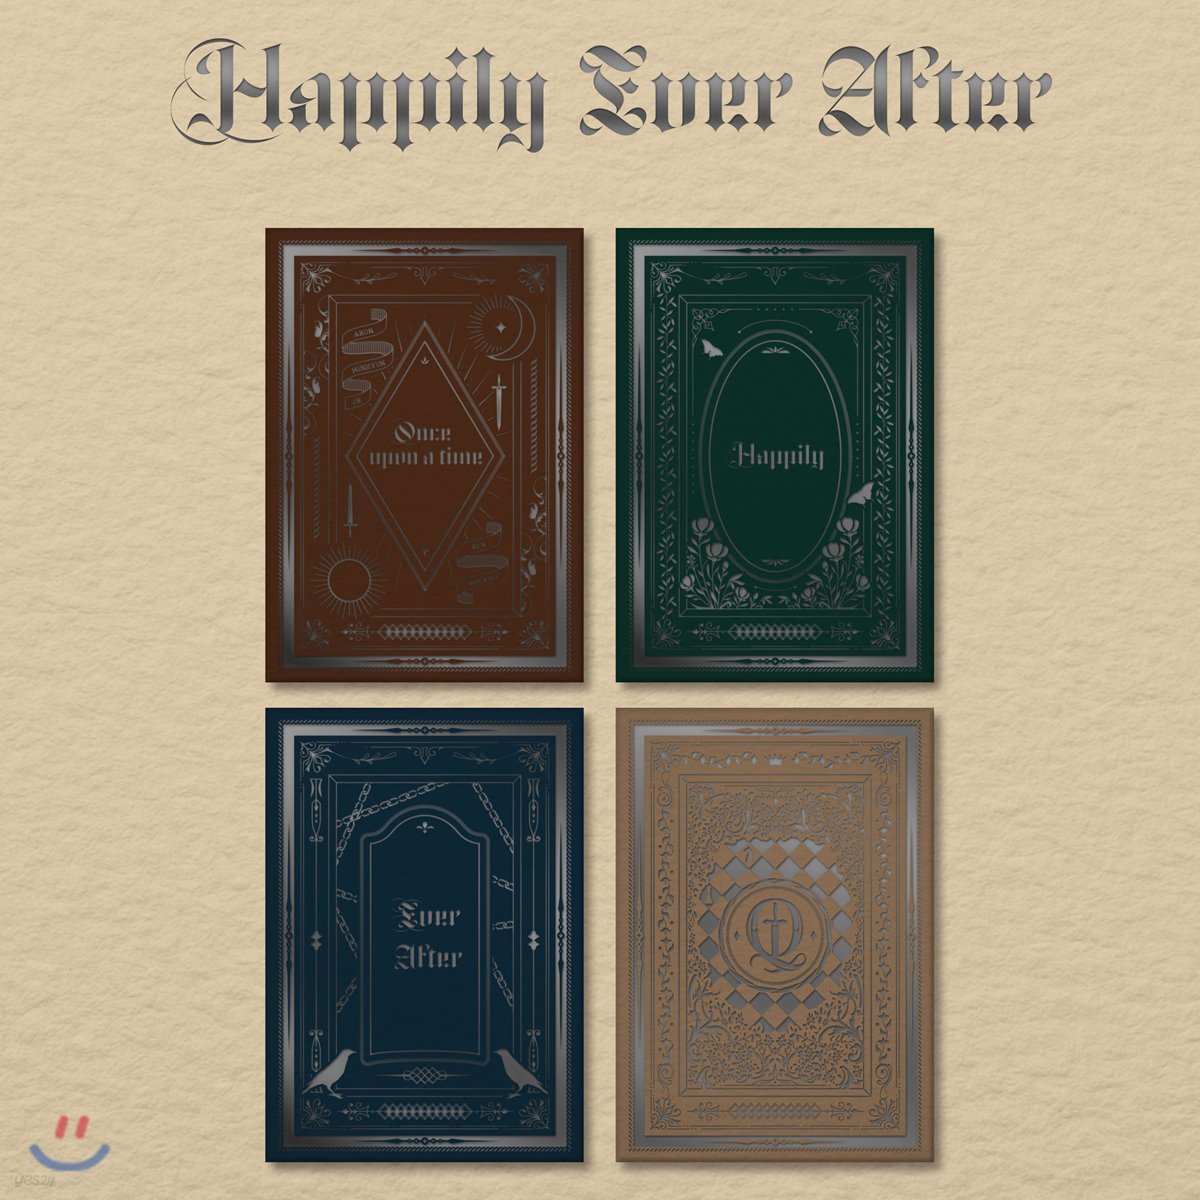 뉴이스트 (NU’EST) - 미니앨범 6집 : Happily Ever After [SET][스마트 뮤직 앨범(키노 앨범)]